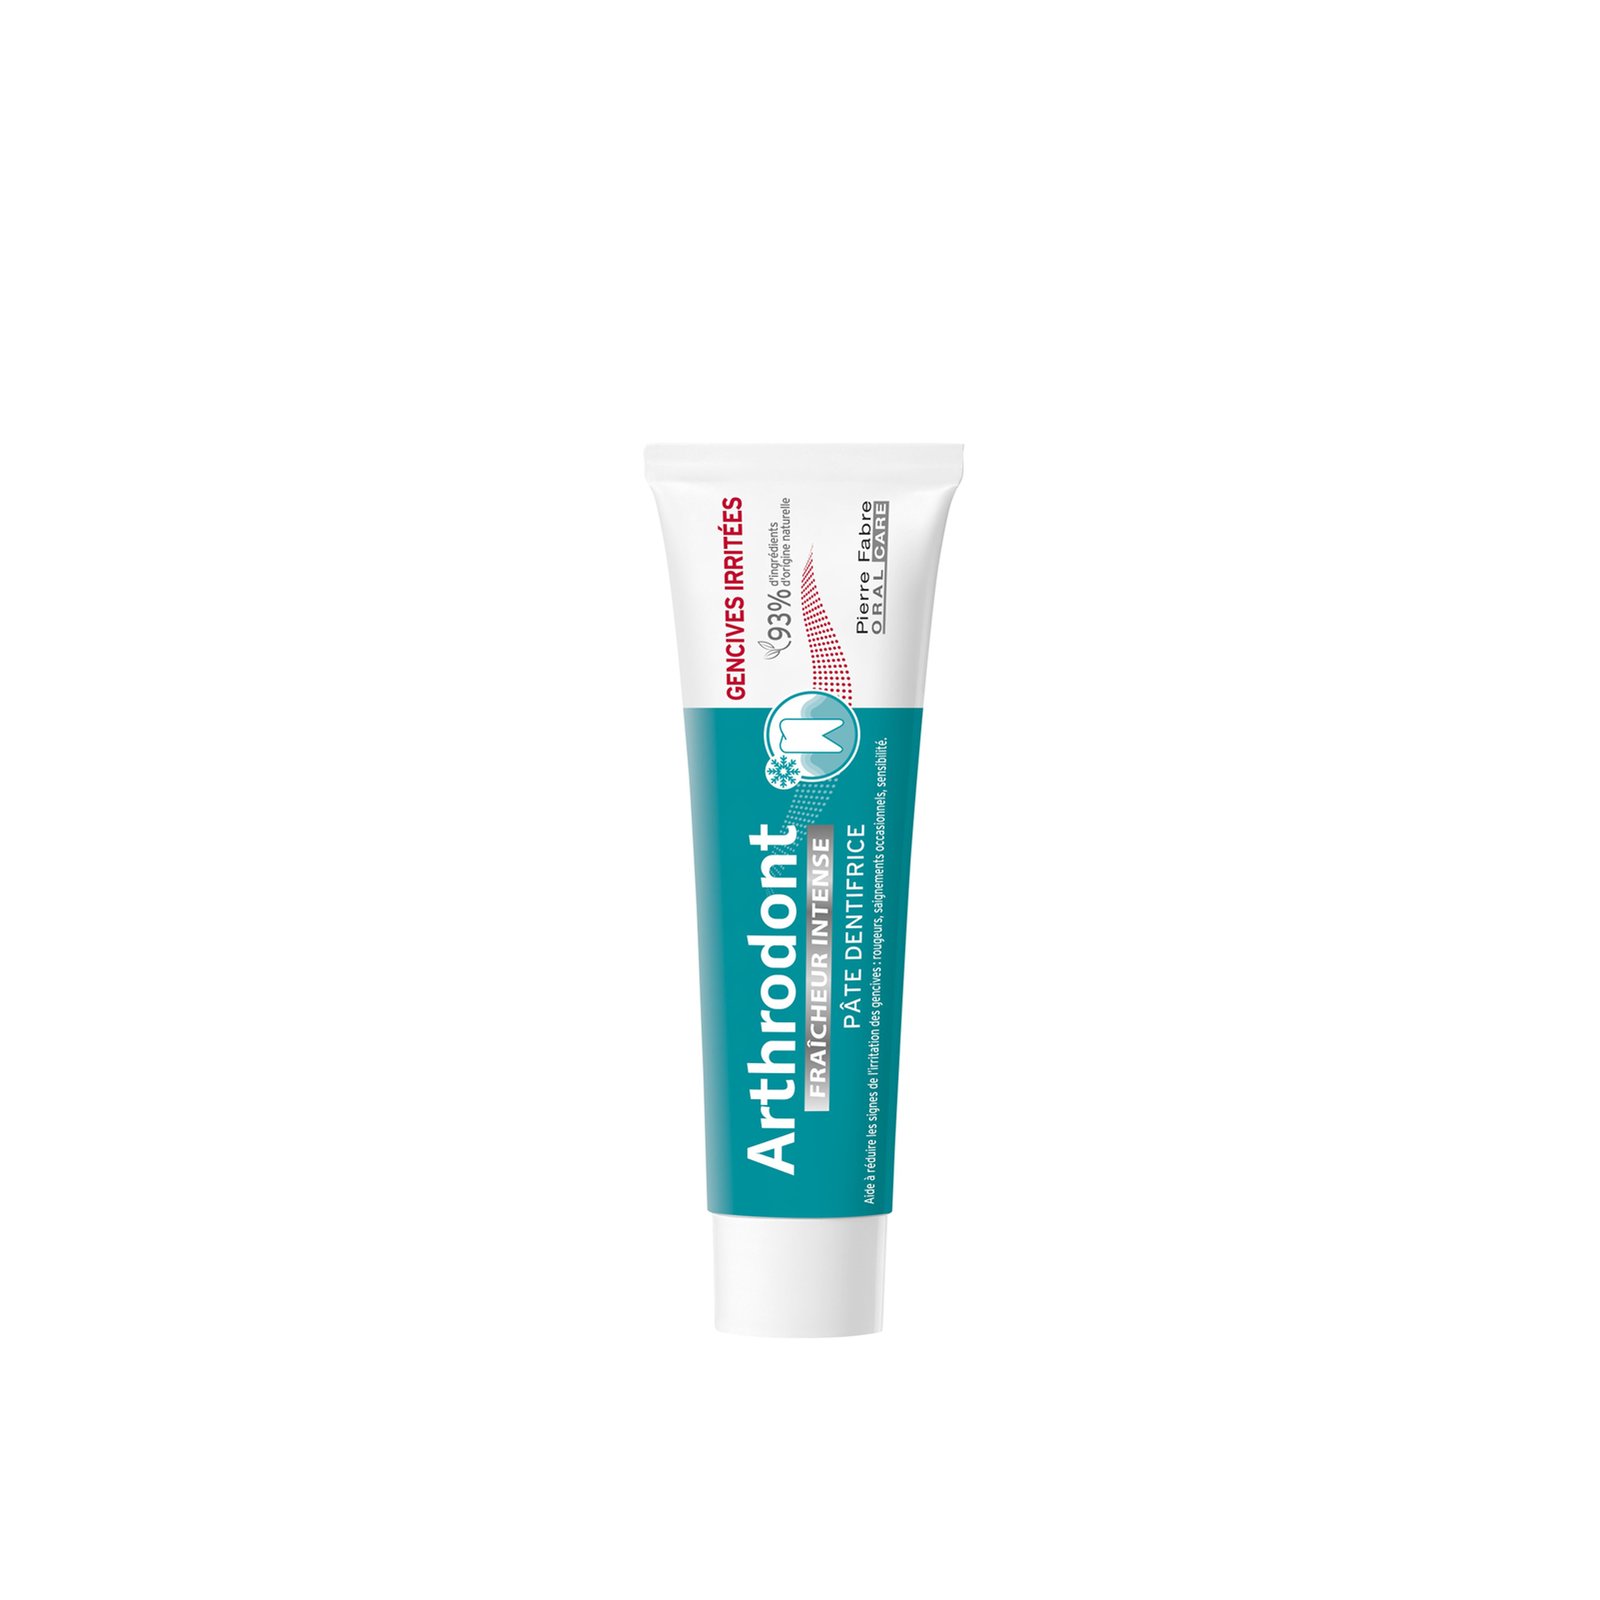 Arthrodont Intense Freshness Toothpaste 75ml (2.53floz)